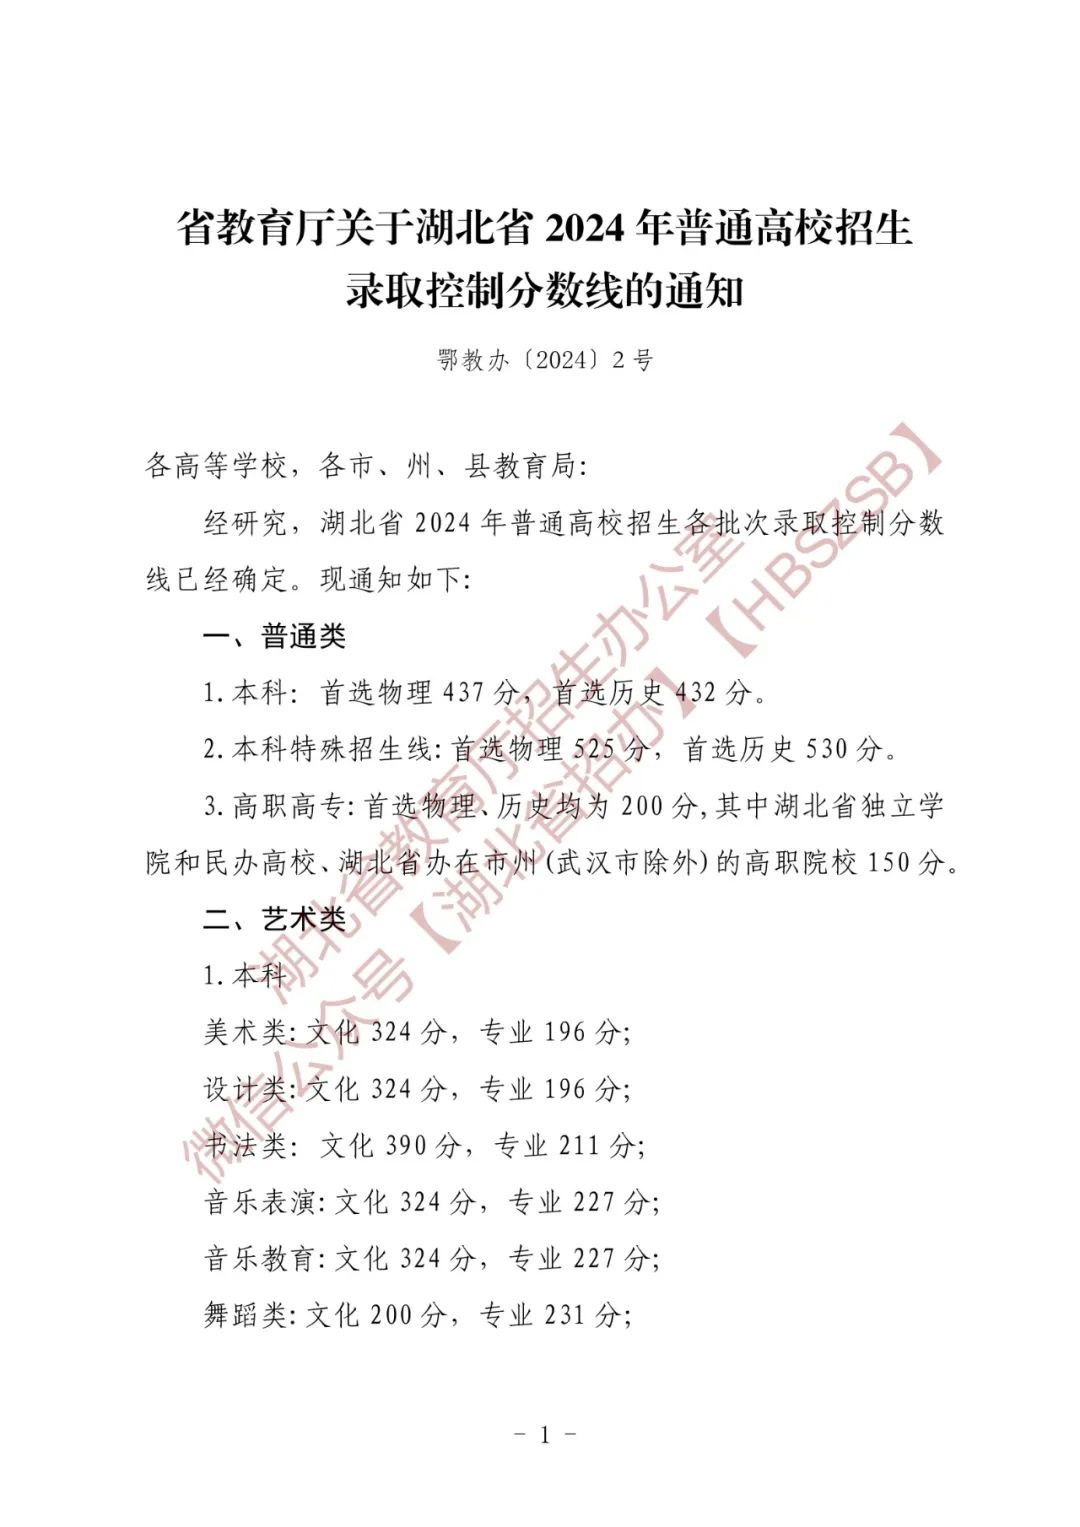 政策发布 | 省教育厅关于湖北省2024年普通高校招生录取控制分数线的通知